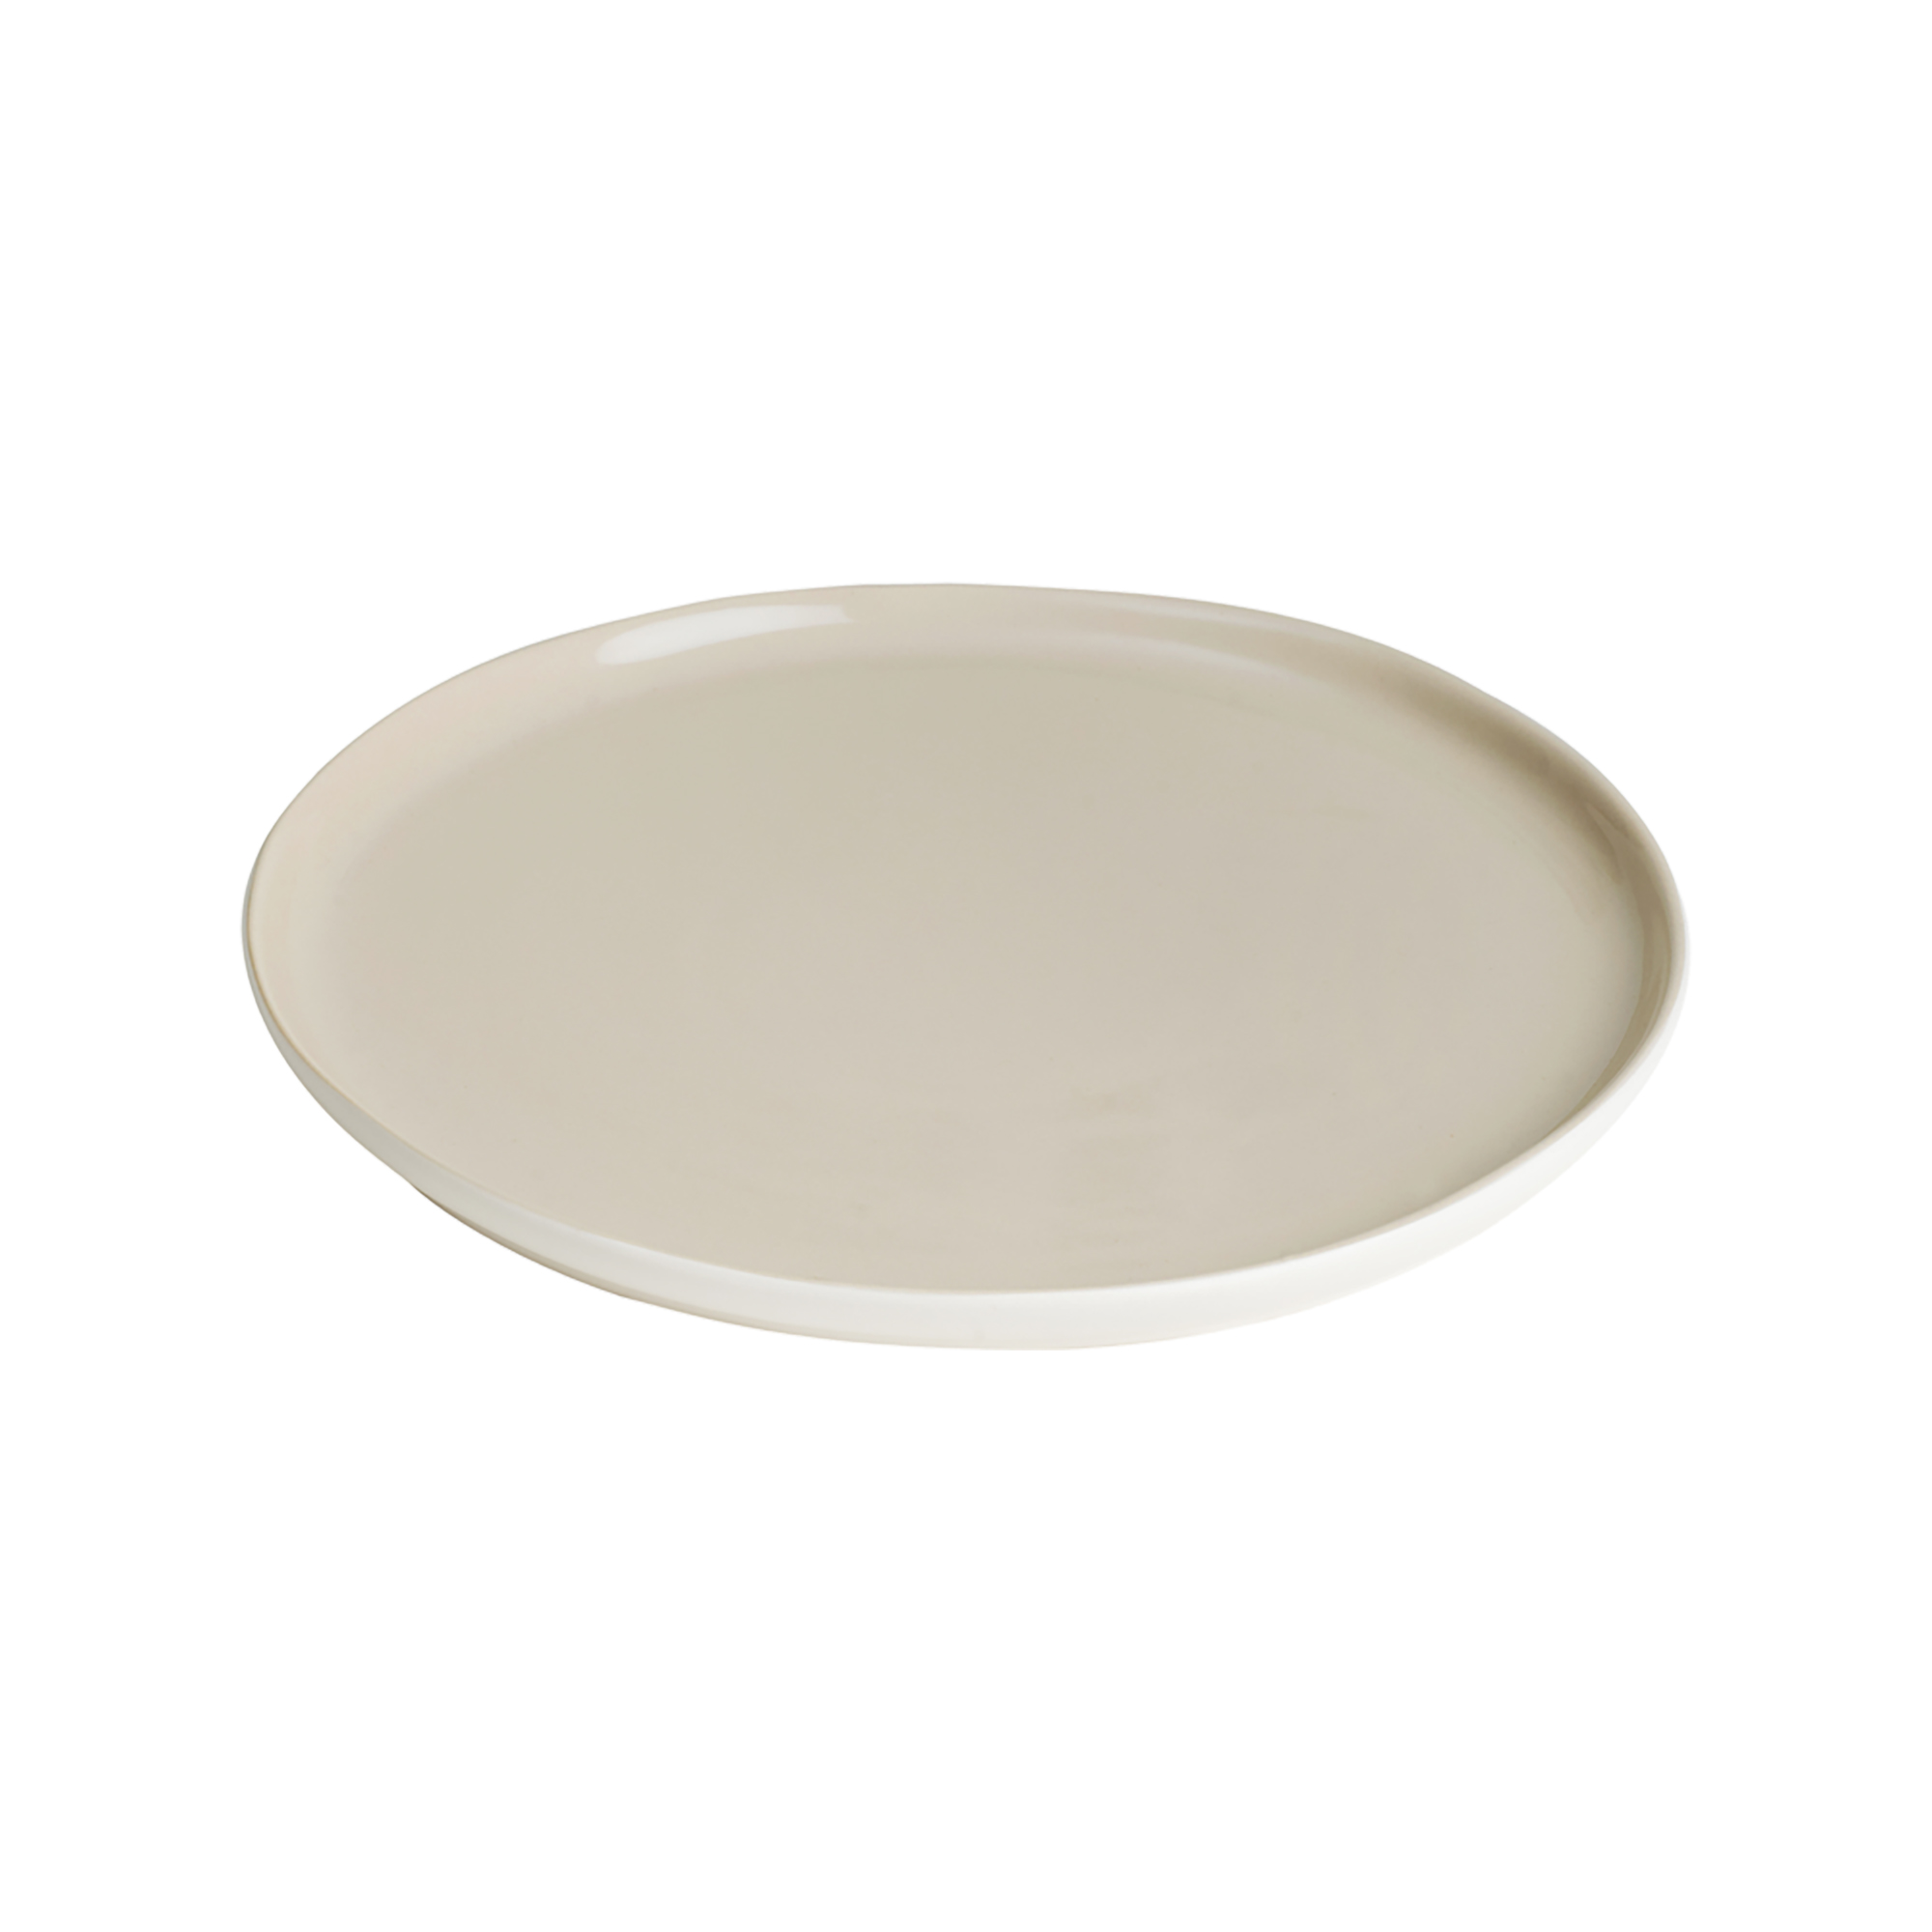 Assiette plate en grès de table beige 28 cm - Lot de 6